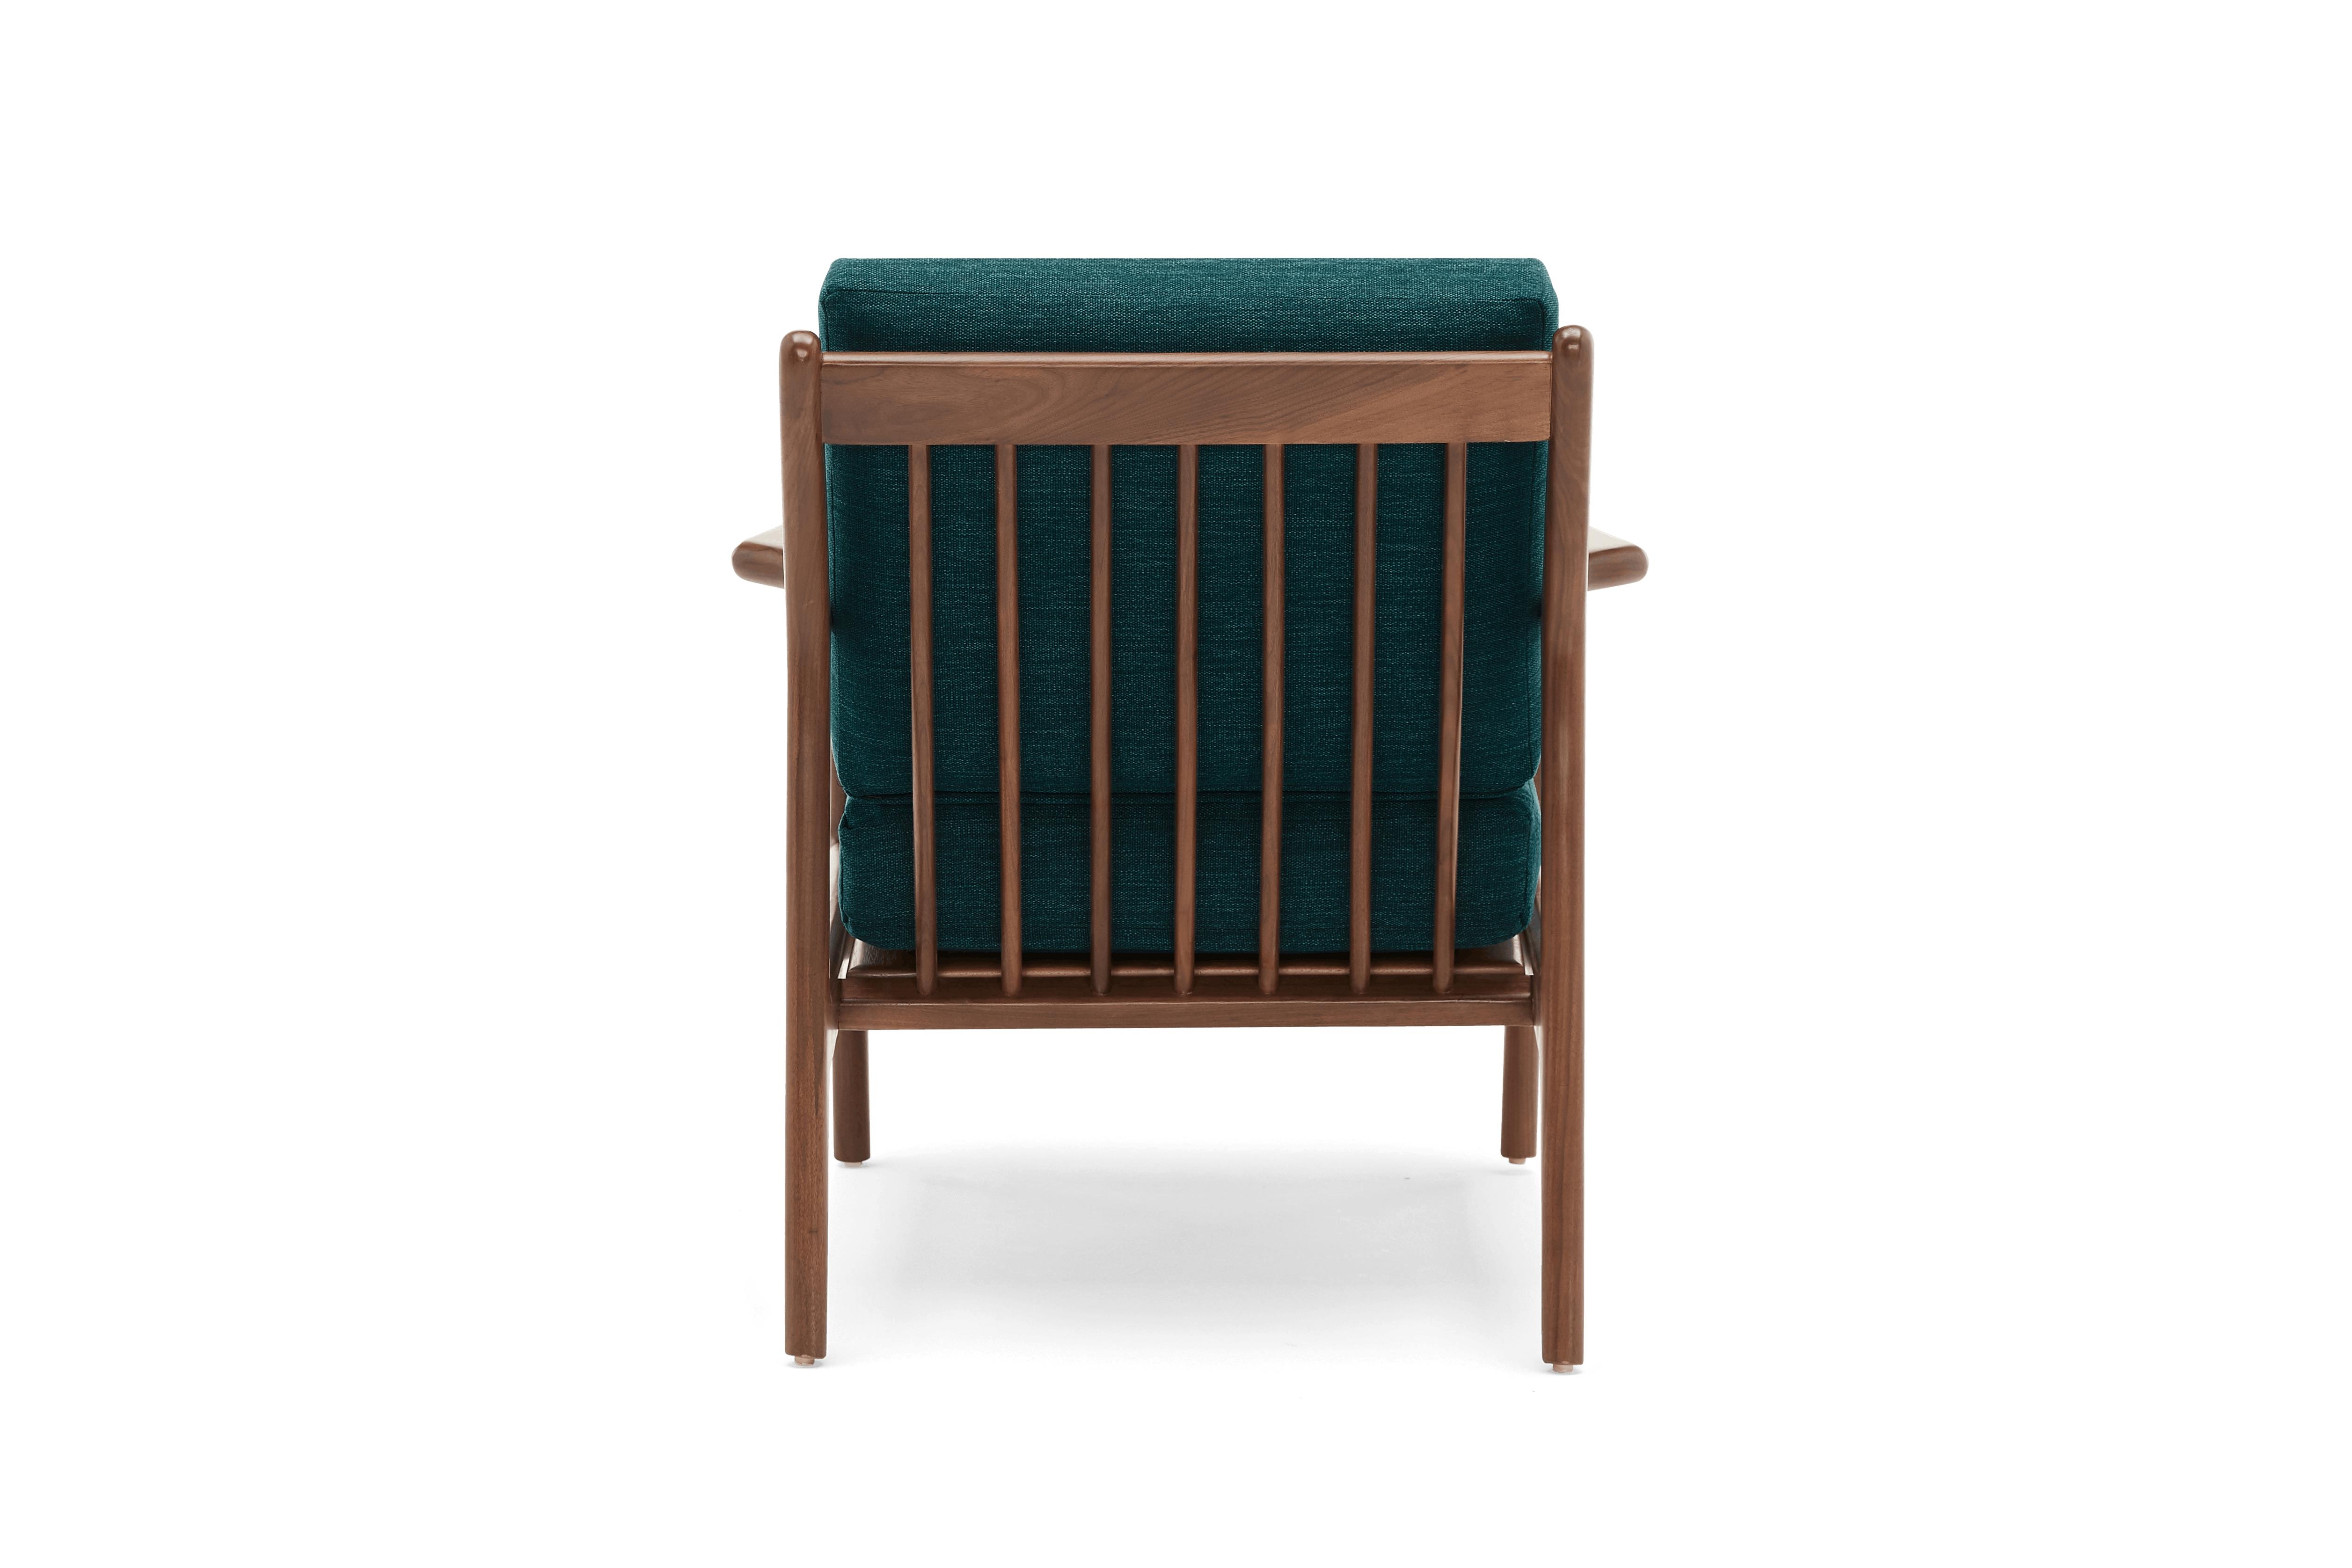 Blue Collins Mid Century Modern Chair - Key Largo Zenith Teal - Walnut - Image 4